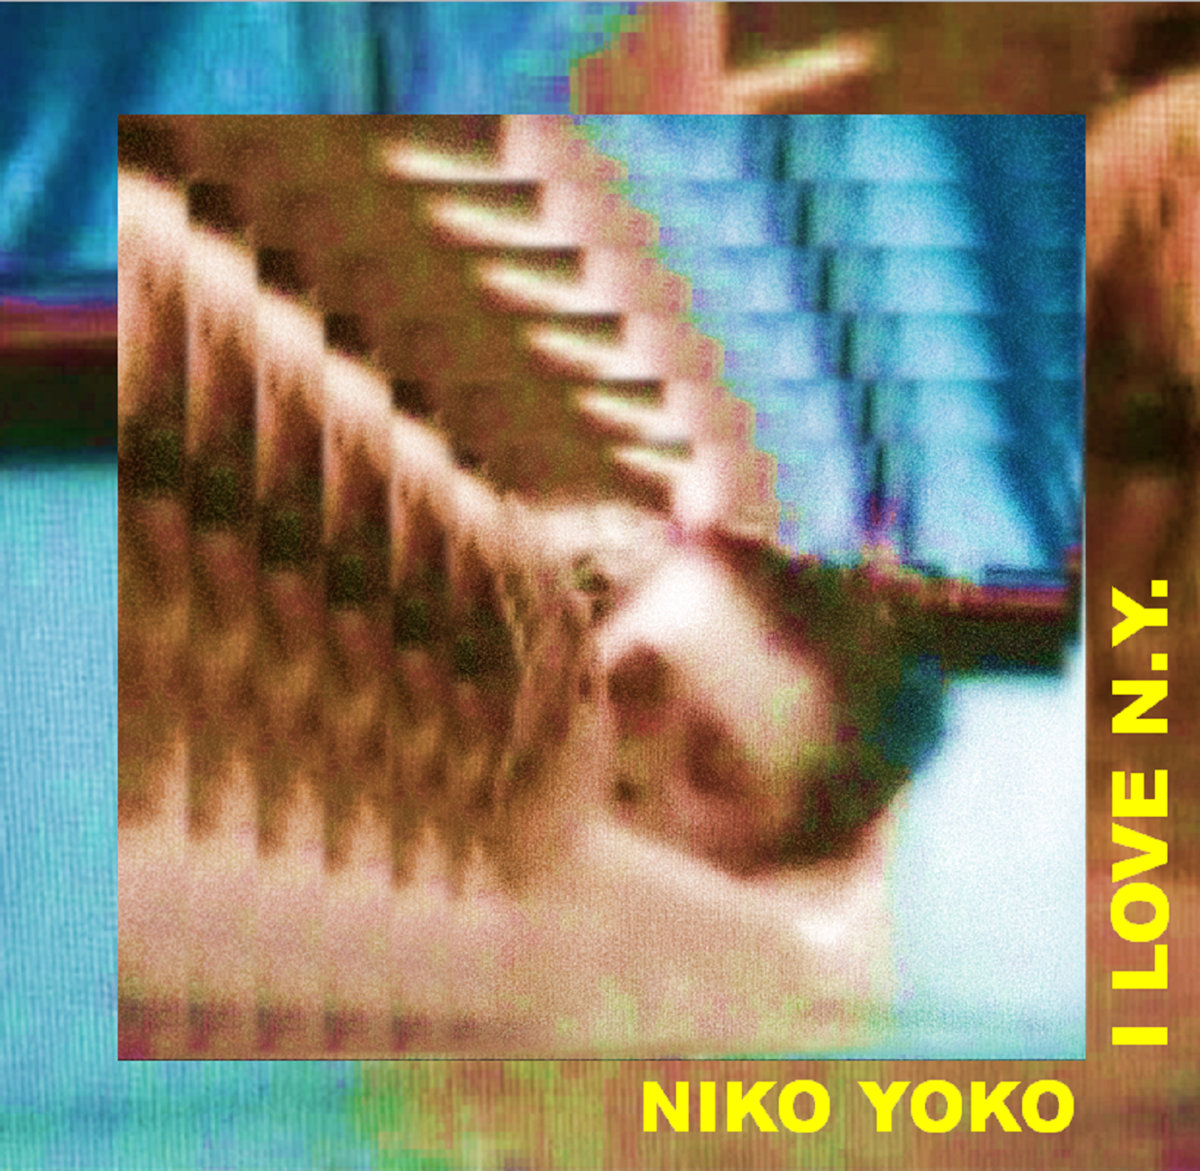 Niko Yoko